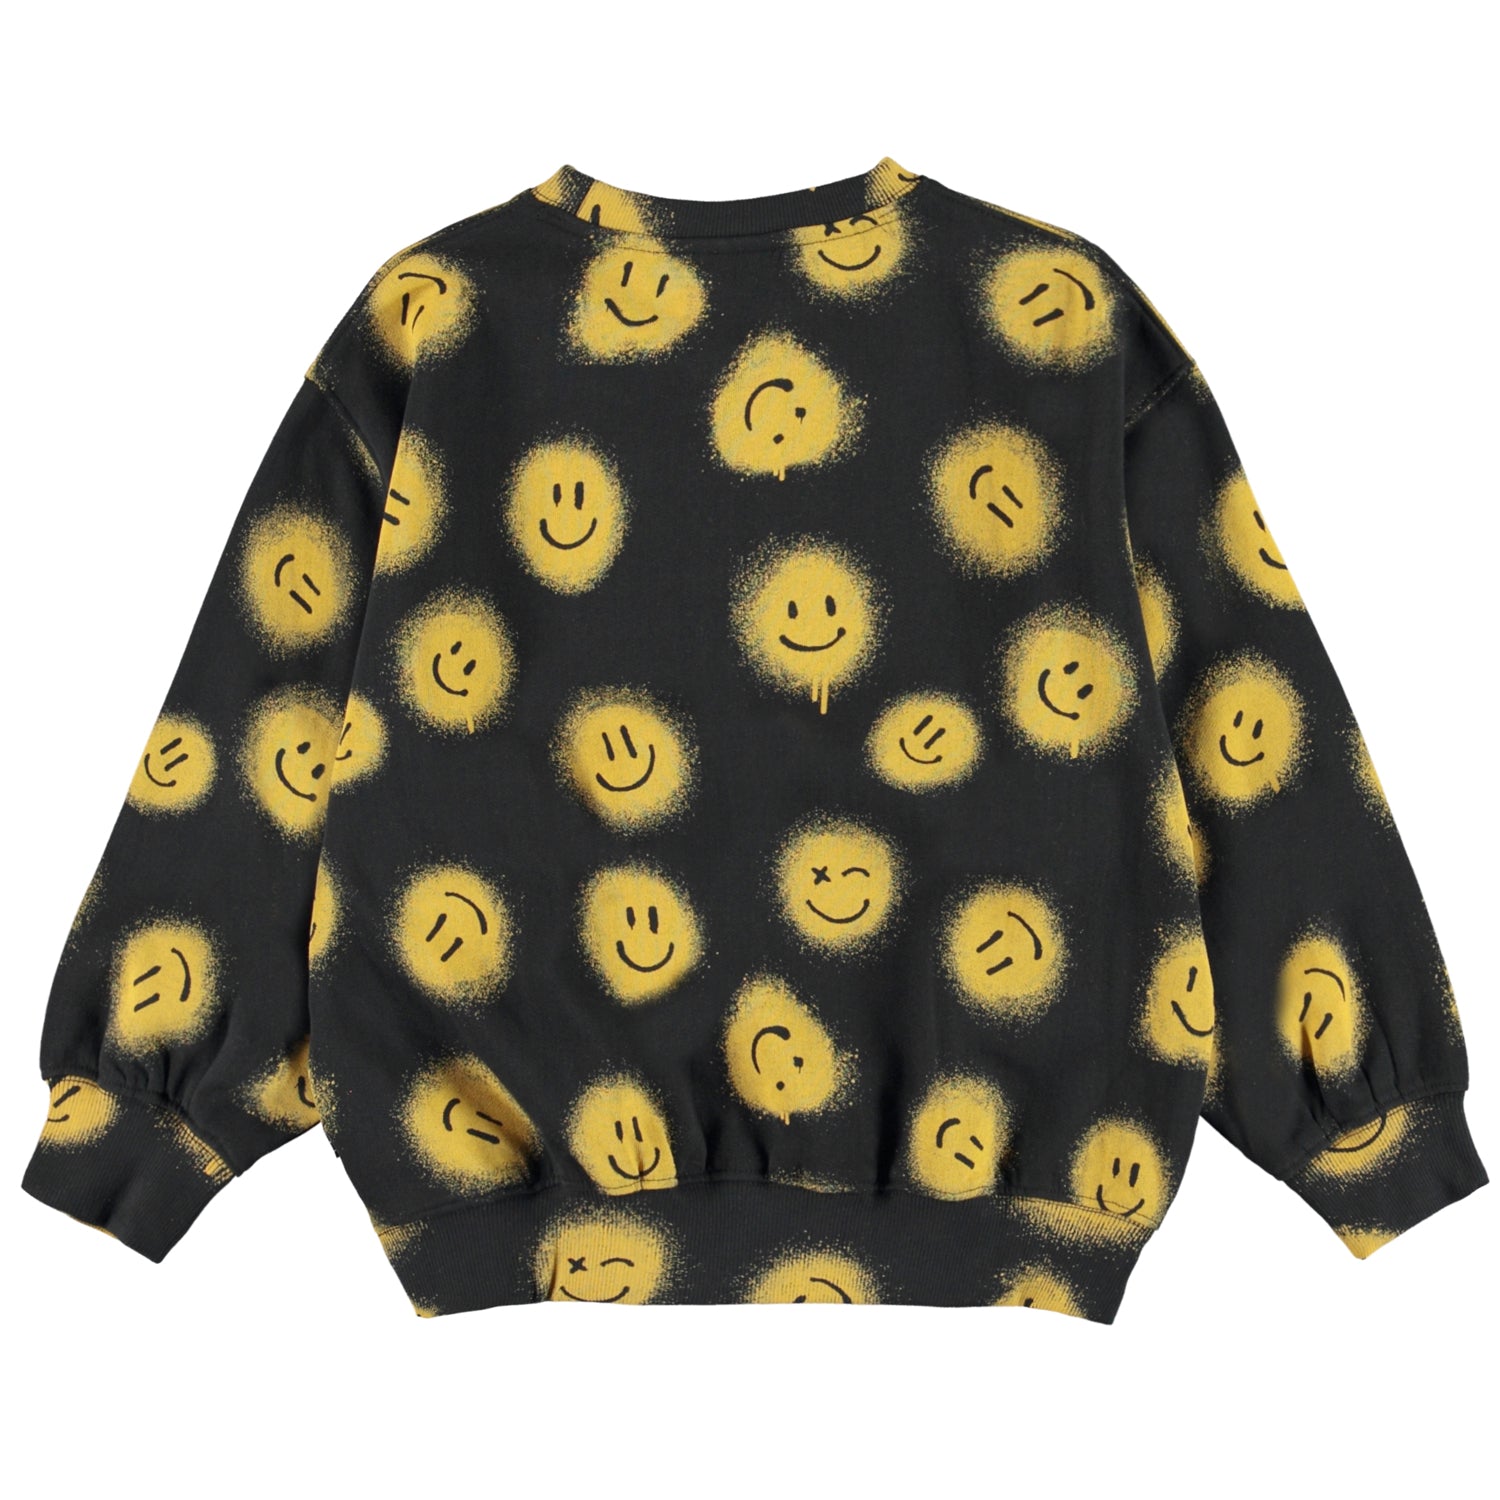 Molo Monti Sweatshirt - Smiles